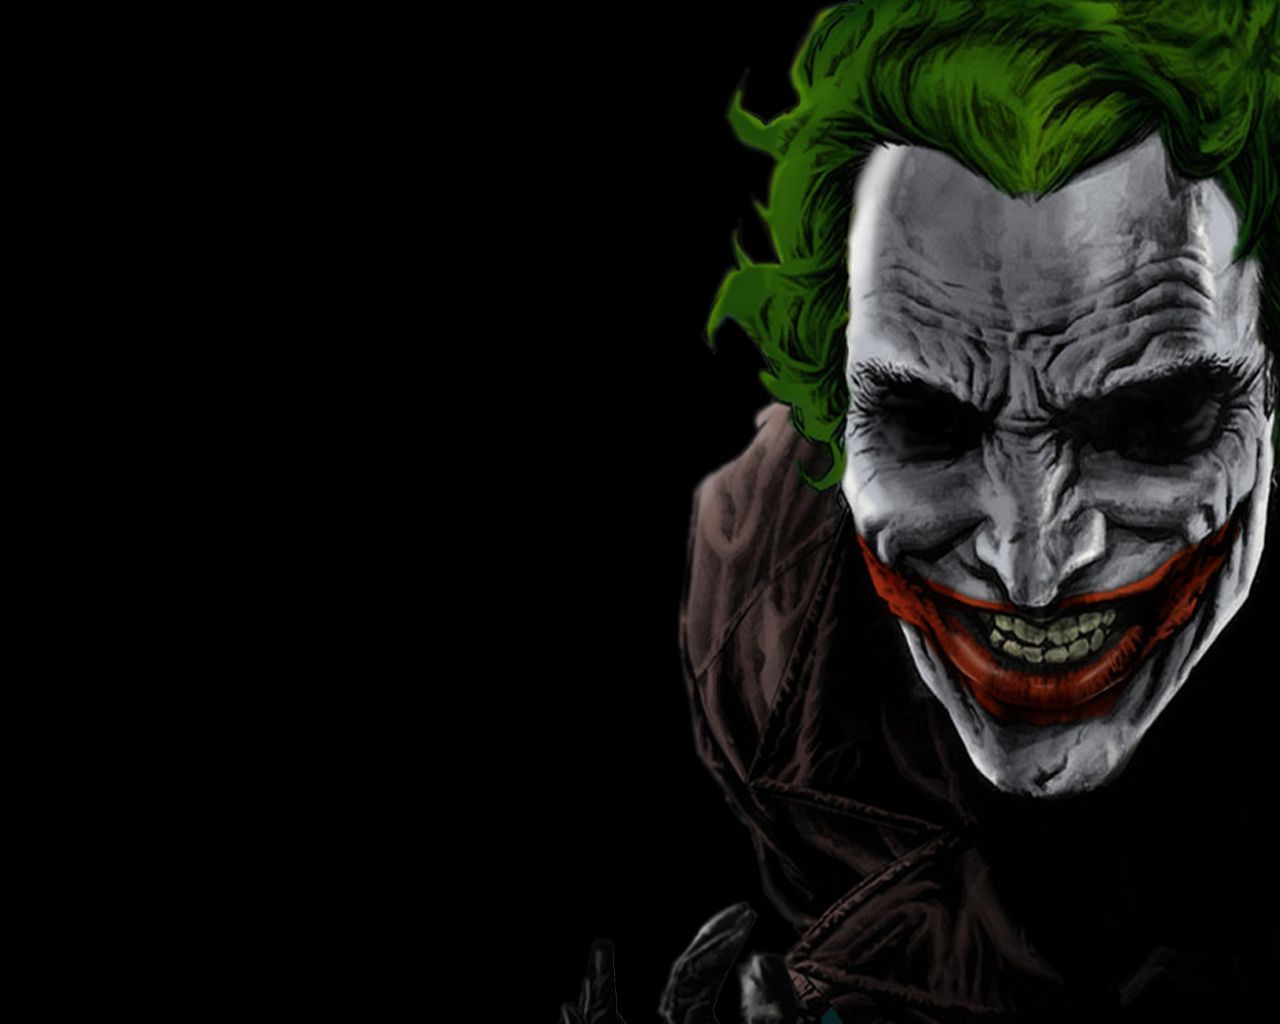 498 Joker HD Wallpapers | Backgrounds - Wallpaper Abyss